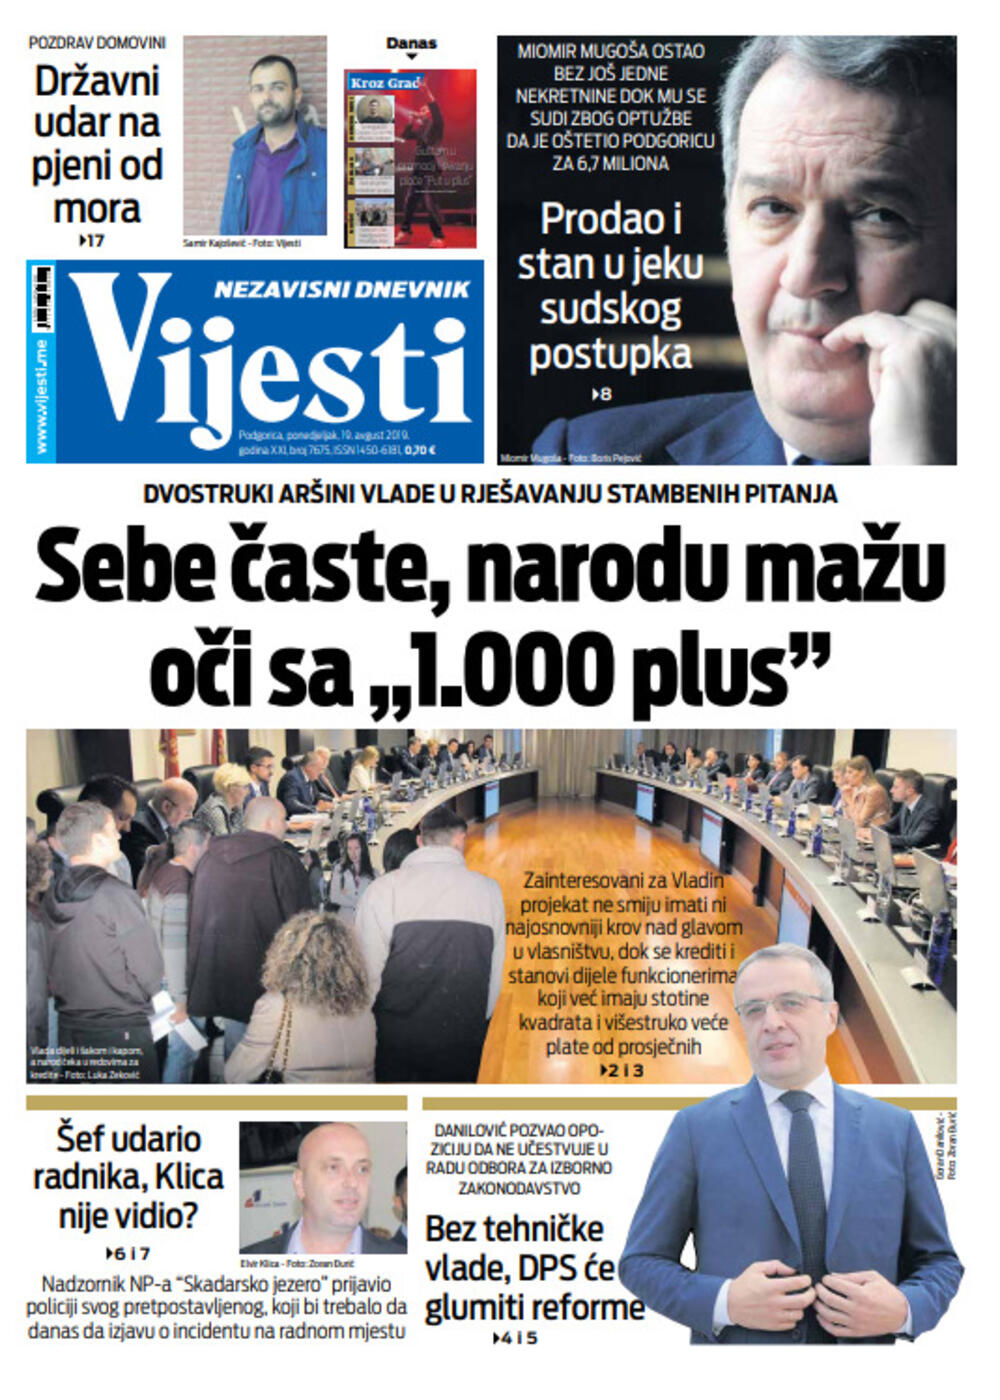 Naslovna strana "Vijesti" za 19. avgust, Foto: Vijesti